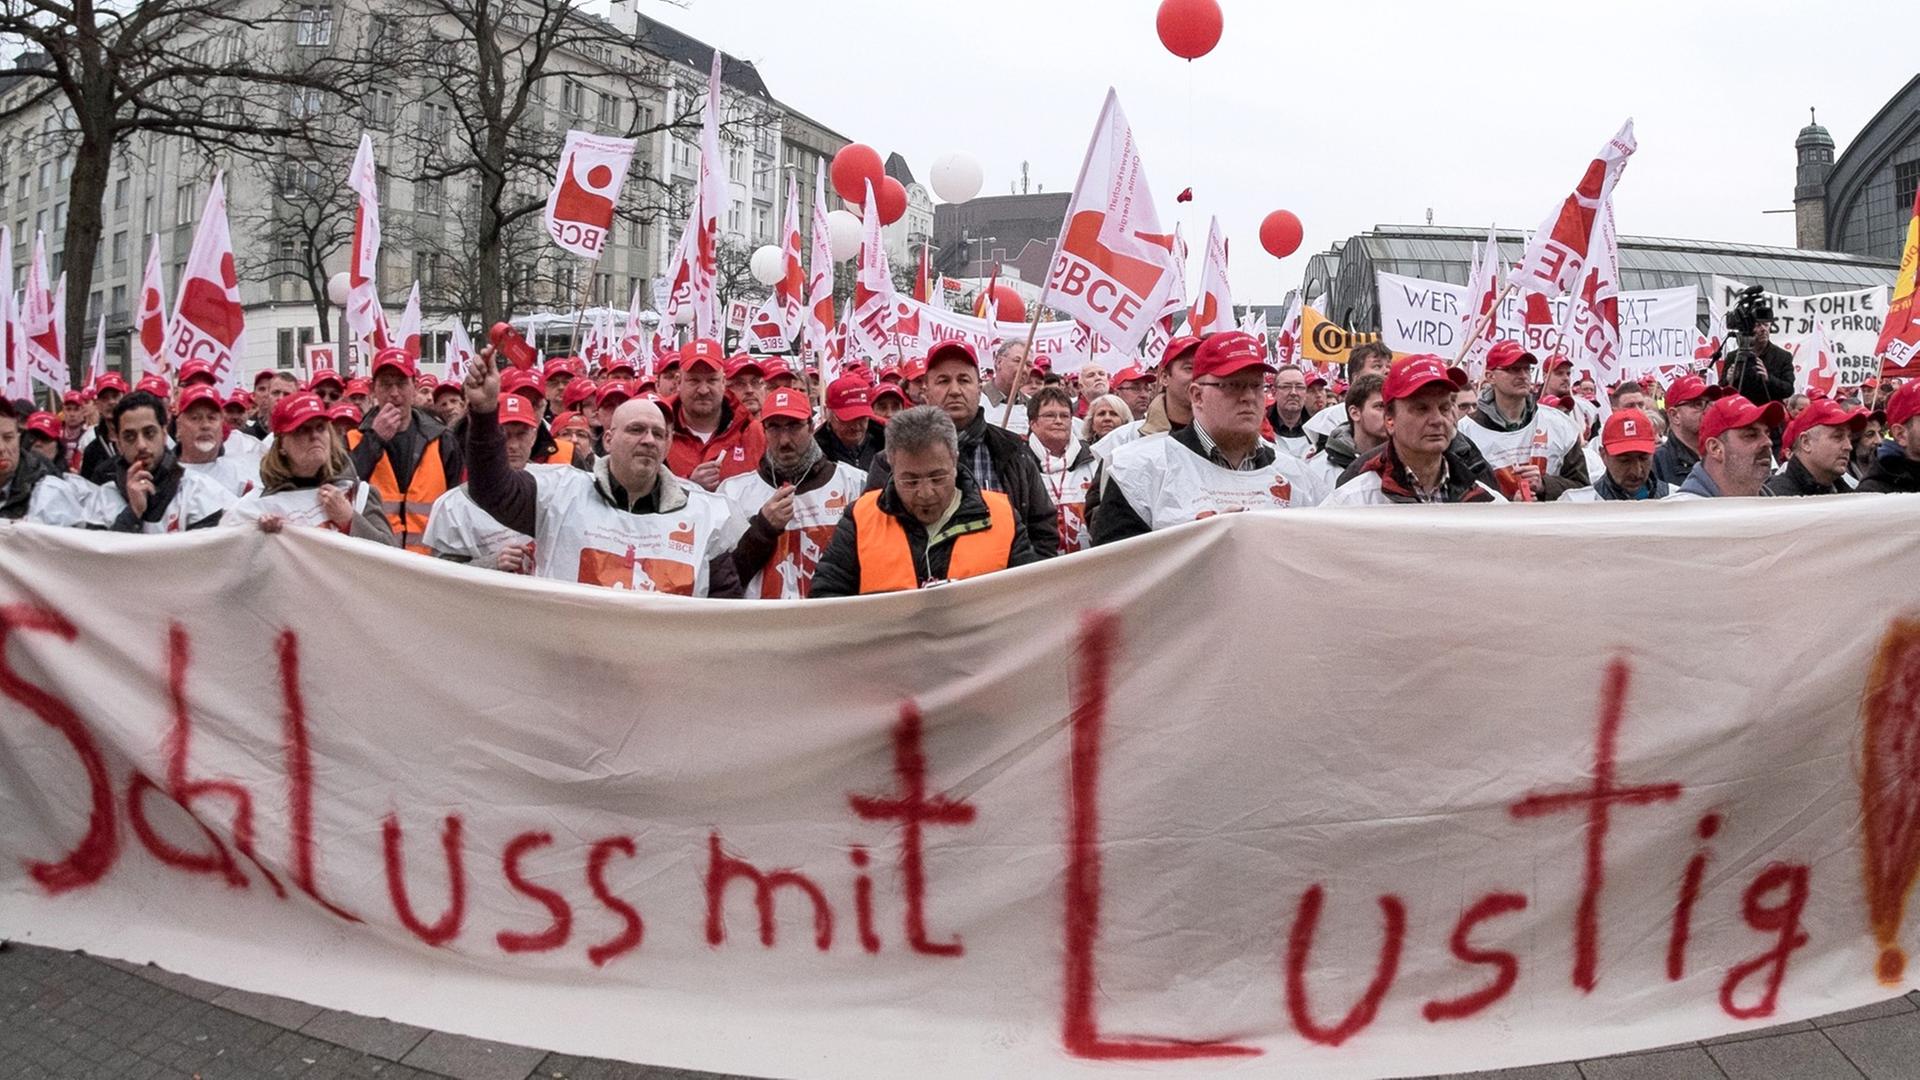 Mitglieder der IG BCE aus Hamburg, Niedersachen und Schleswig-Holstein demonstrieren am 25.03.2015 in Hamburg auf dem Hachmannplatz und halten ein Transparent mit der Aufschrift: "Schluss mit lustig! 4,8 %".